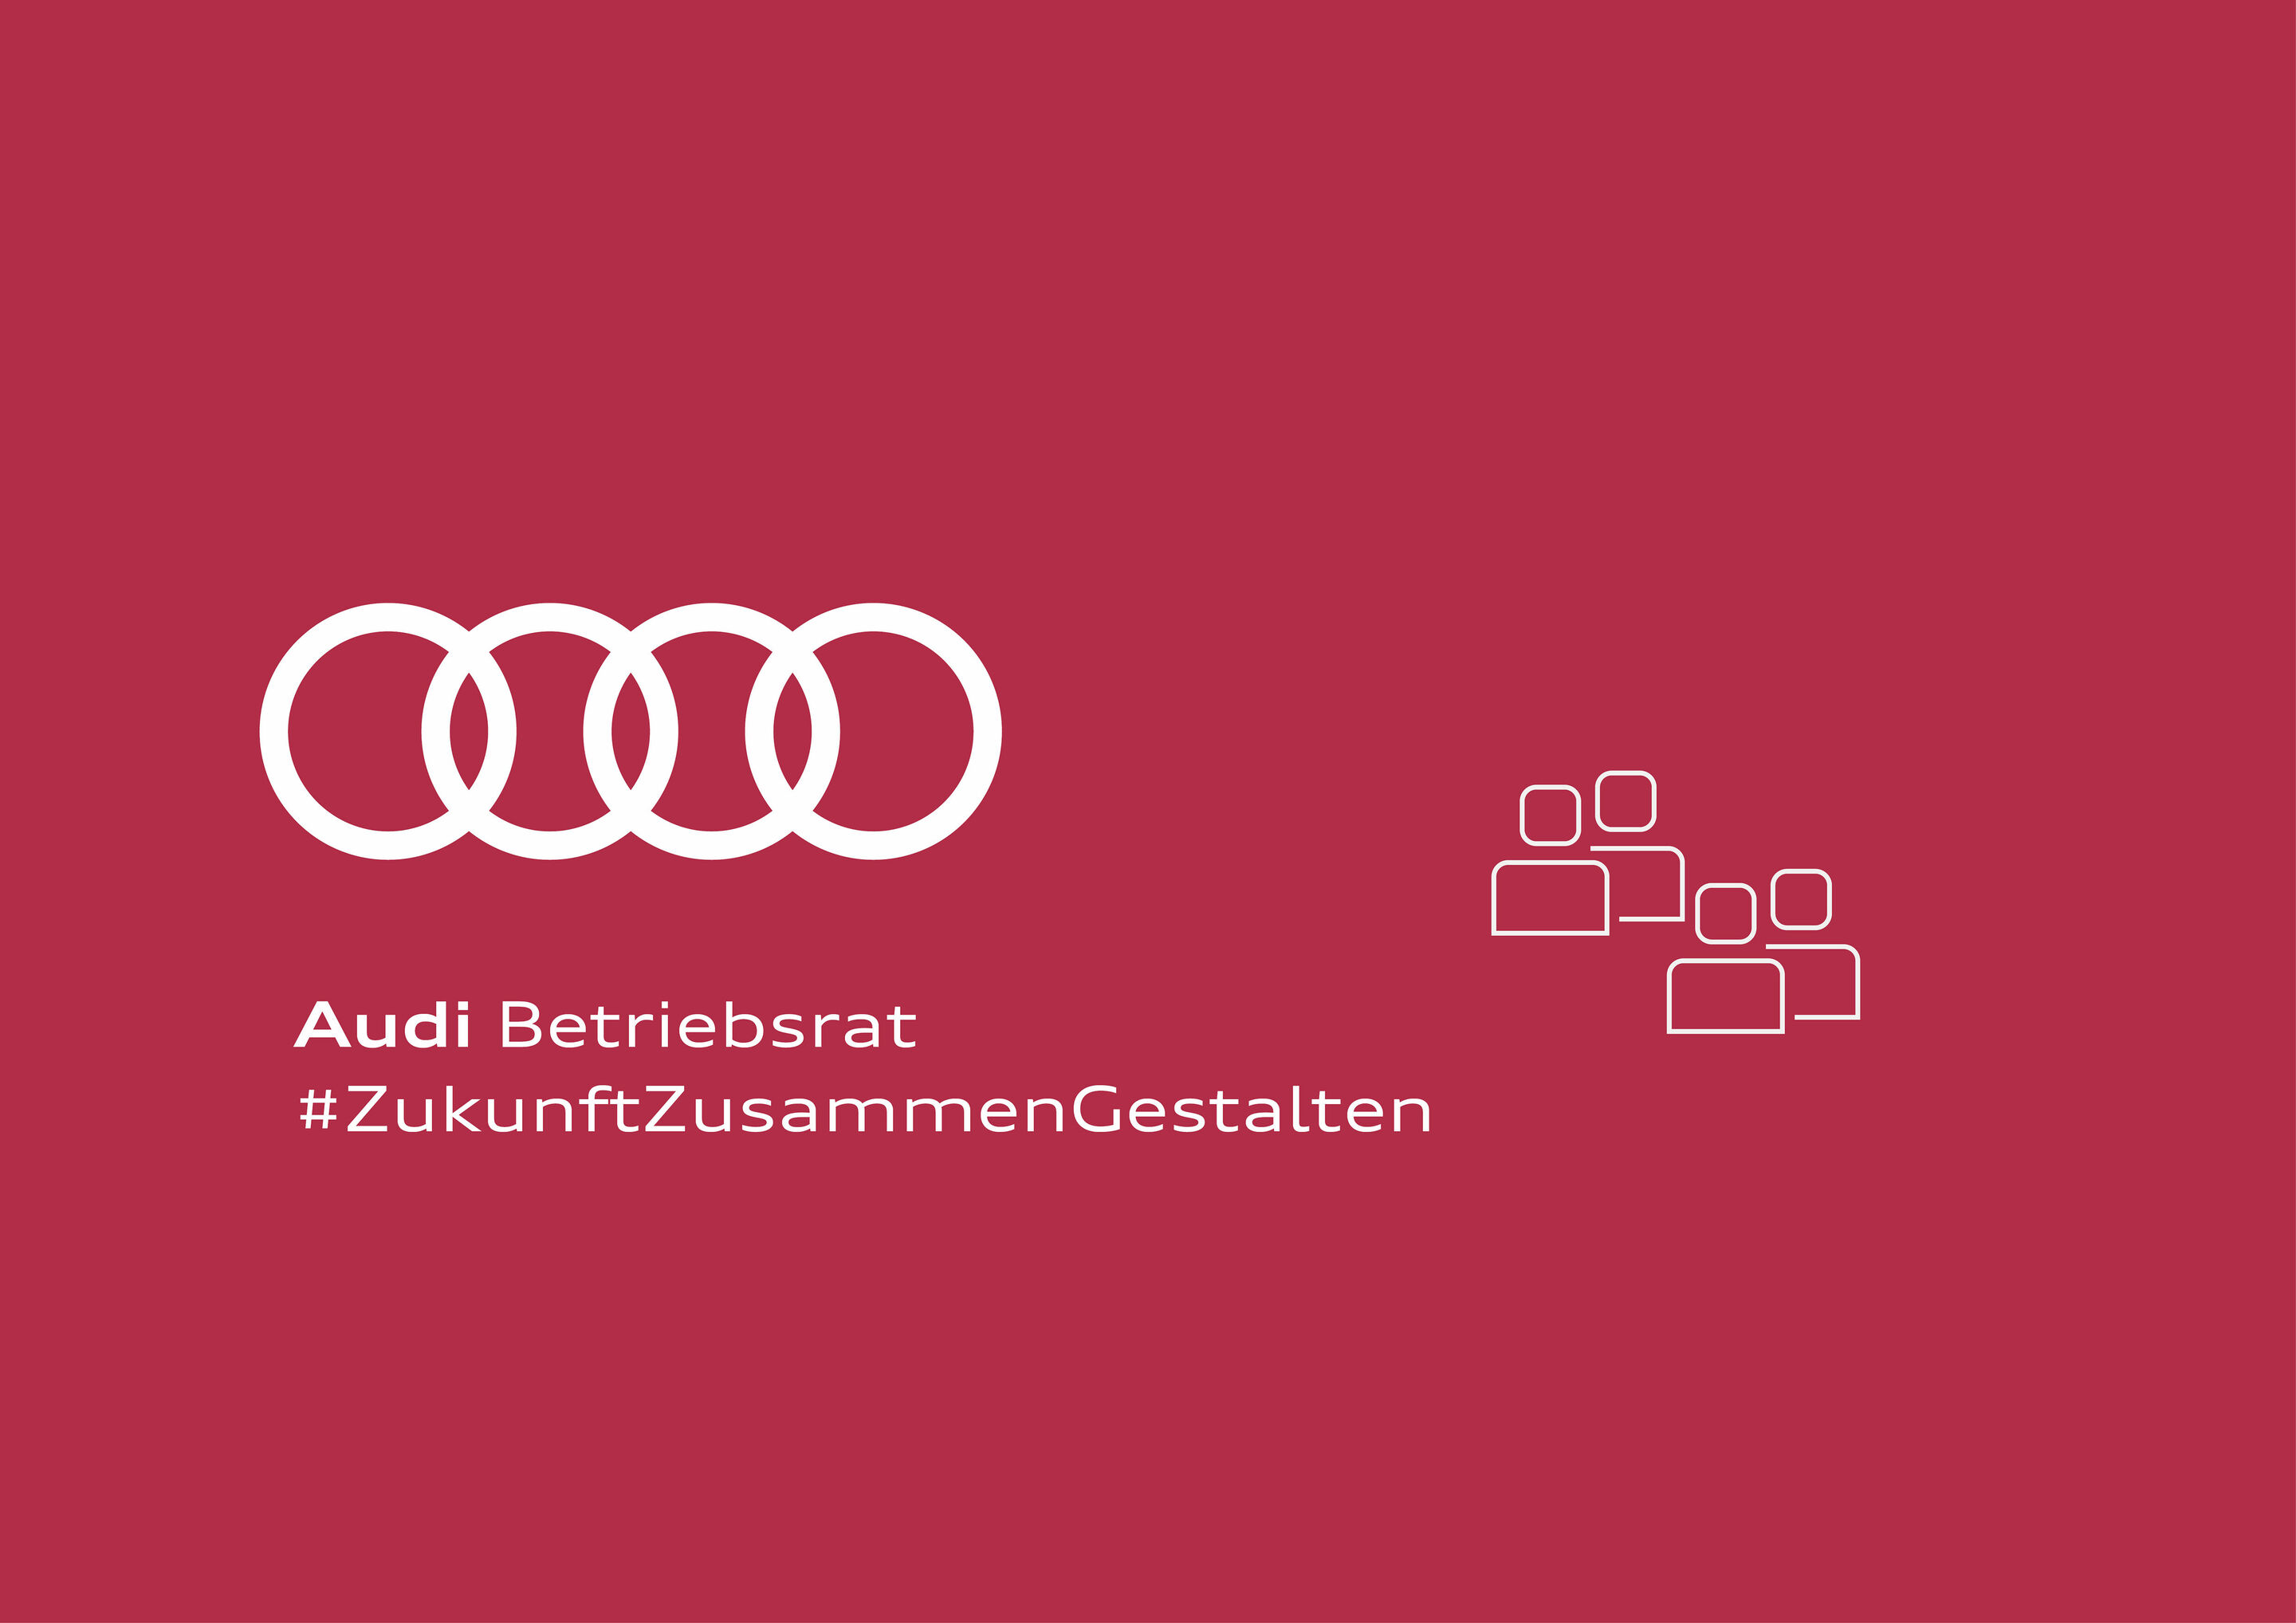 Audi Works Council